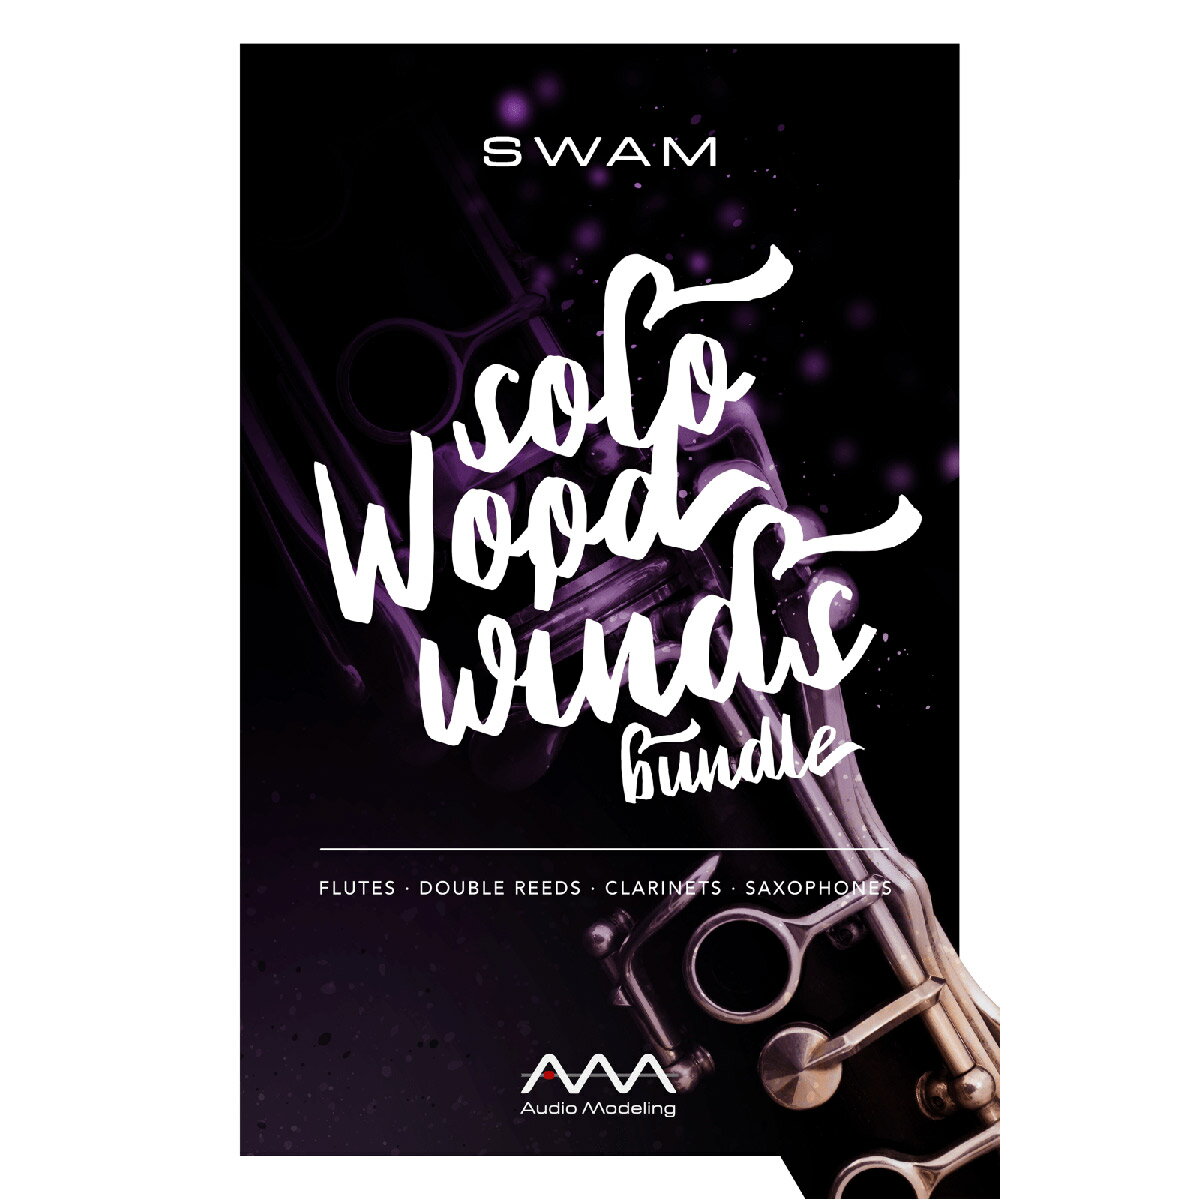 SWAM Flutes, Double Reeds, CLarinets そしてSaxophonesを一つに収録したバンドル【特徴】SWAM Solo Woodwinds Bundleは、SWAM Flutes, Double Reeds, Clarinets そして Saxophoneを一つに収録したバンドルです。SWAMインストゥルメントは、Audio Modeling独自の革新的パフォーマンス技術、振舞い／物理モデリング・コンセプトとマルチ・ベクトル／位相同期サンプリング技術を組み合わせ、開発されています。これらソロ管楽器インストゥルメントの持つリアルかつ卓越した表現力は、他の追随を許さない領域に達しています。さらにMIDIコントローラーからのリアルタイム・コントロールにも対応し、かつてないほどに表現豊かに、本物の楽器同様の自然な振る舞いまで、バーチャルに再現します。【】GB単位の容量を要するサンプル・ライブラリも必要ありません。SWAMインストゥルメントは非常に小さなディスク/CPUフットプリントを実現しています。しかも表現力あふれるライブ演奏に必要とされる多彩なパラメーターにより、完全にオーガニック、かつ安定したサウンドを生み出すことができるのです。SWAM Solo Woodwinds Bundleは、、作曲、制作、そしてライブ・パフォーマンスまで、あらゆる音楽ジャンルで、インスタンスごとのシンプルな音色の調整だけで、不自然な響きを生み出すことなく、楽器を重ねてセクションを作ることが可能です。ジャズ、クラシック、ポップ・ミュージックからカントリーまで、サウンドや楽器の振る舞いを表すパラメーターを少し変えるだけで、お望みのレスポンスを得ることができるでしょう。 SWAM Engineによるデジタル・ハンドメイドのアコースティック・インストゥルメントは、サンプルライブラリに録音された素材を鳴らすような、シンプルな仕組みではありません。伝統的な楽器を元に再現されたバーチャルかつリアルな楽器そのものです。リアルタイム・コントロールによって一層深くバーチャル・アコースティック楽器の表現力を引き出すことができます。録音されたサンプルではない本物の楽器を、SWAMインストゥルメントが実現します。JANコード：4533940100883